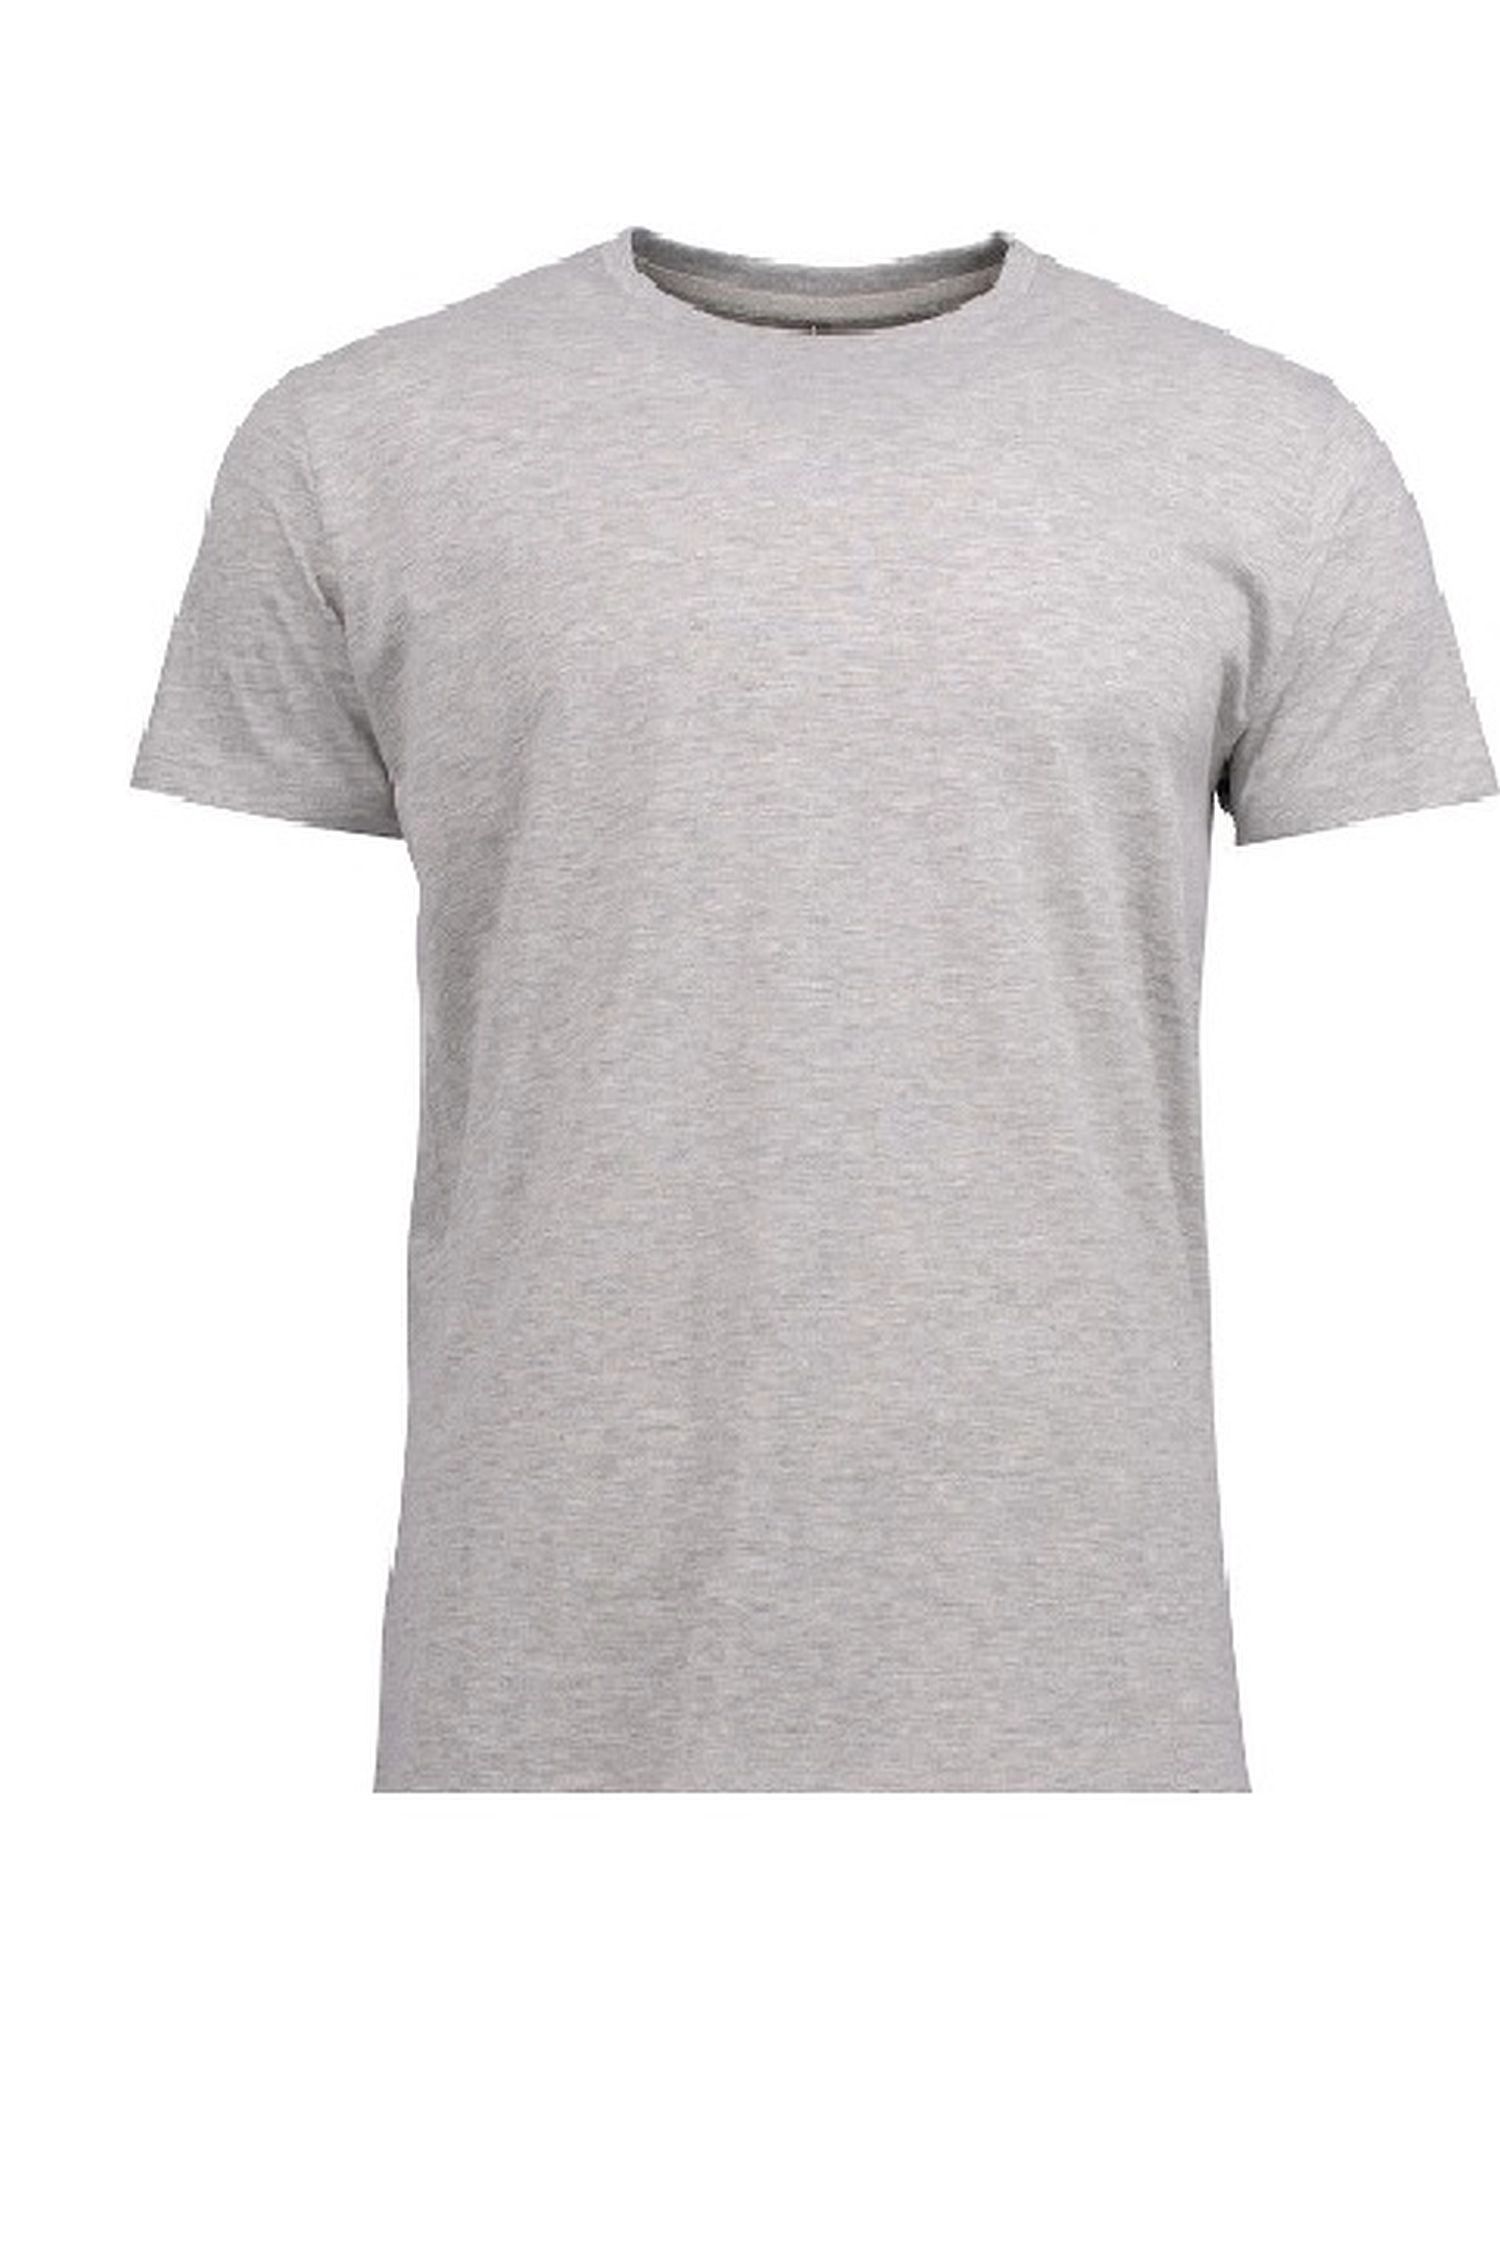 Pánské tričko 002 grey